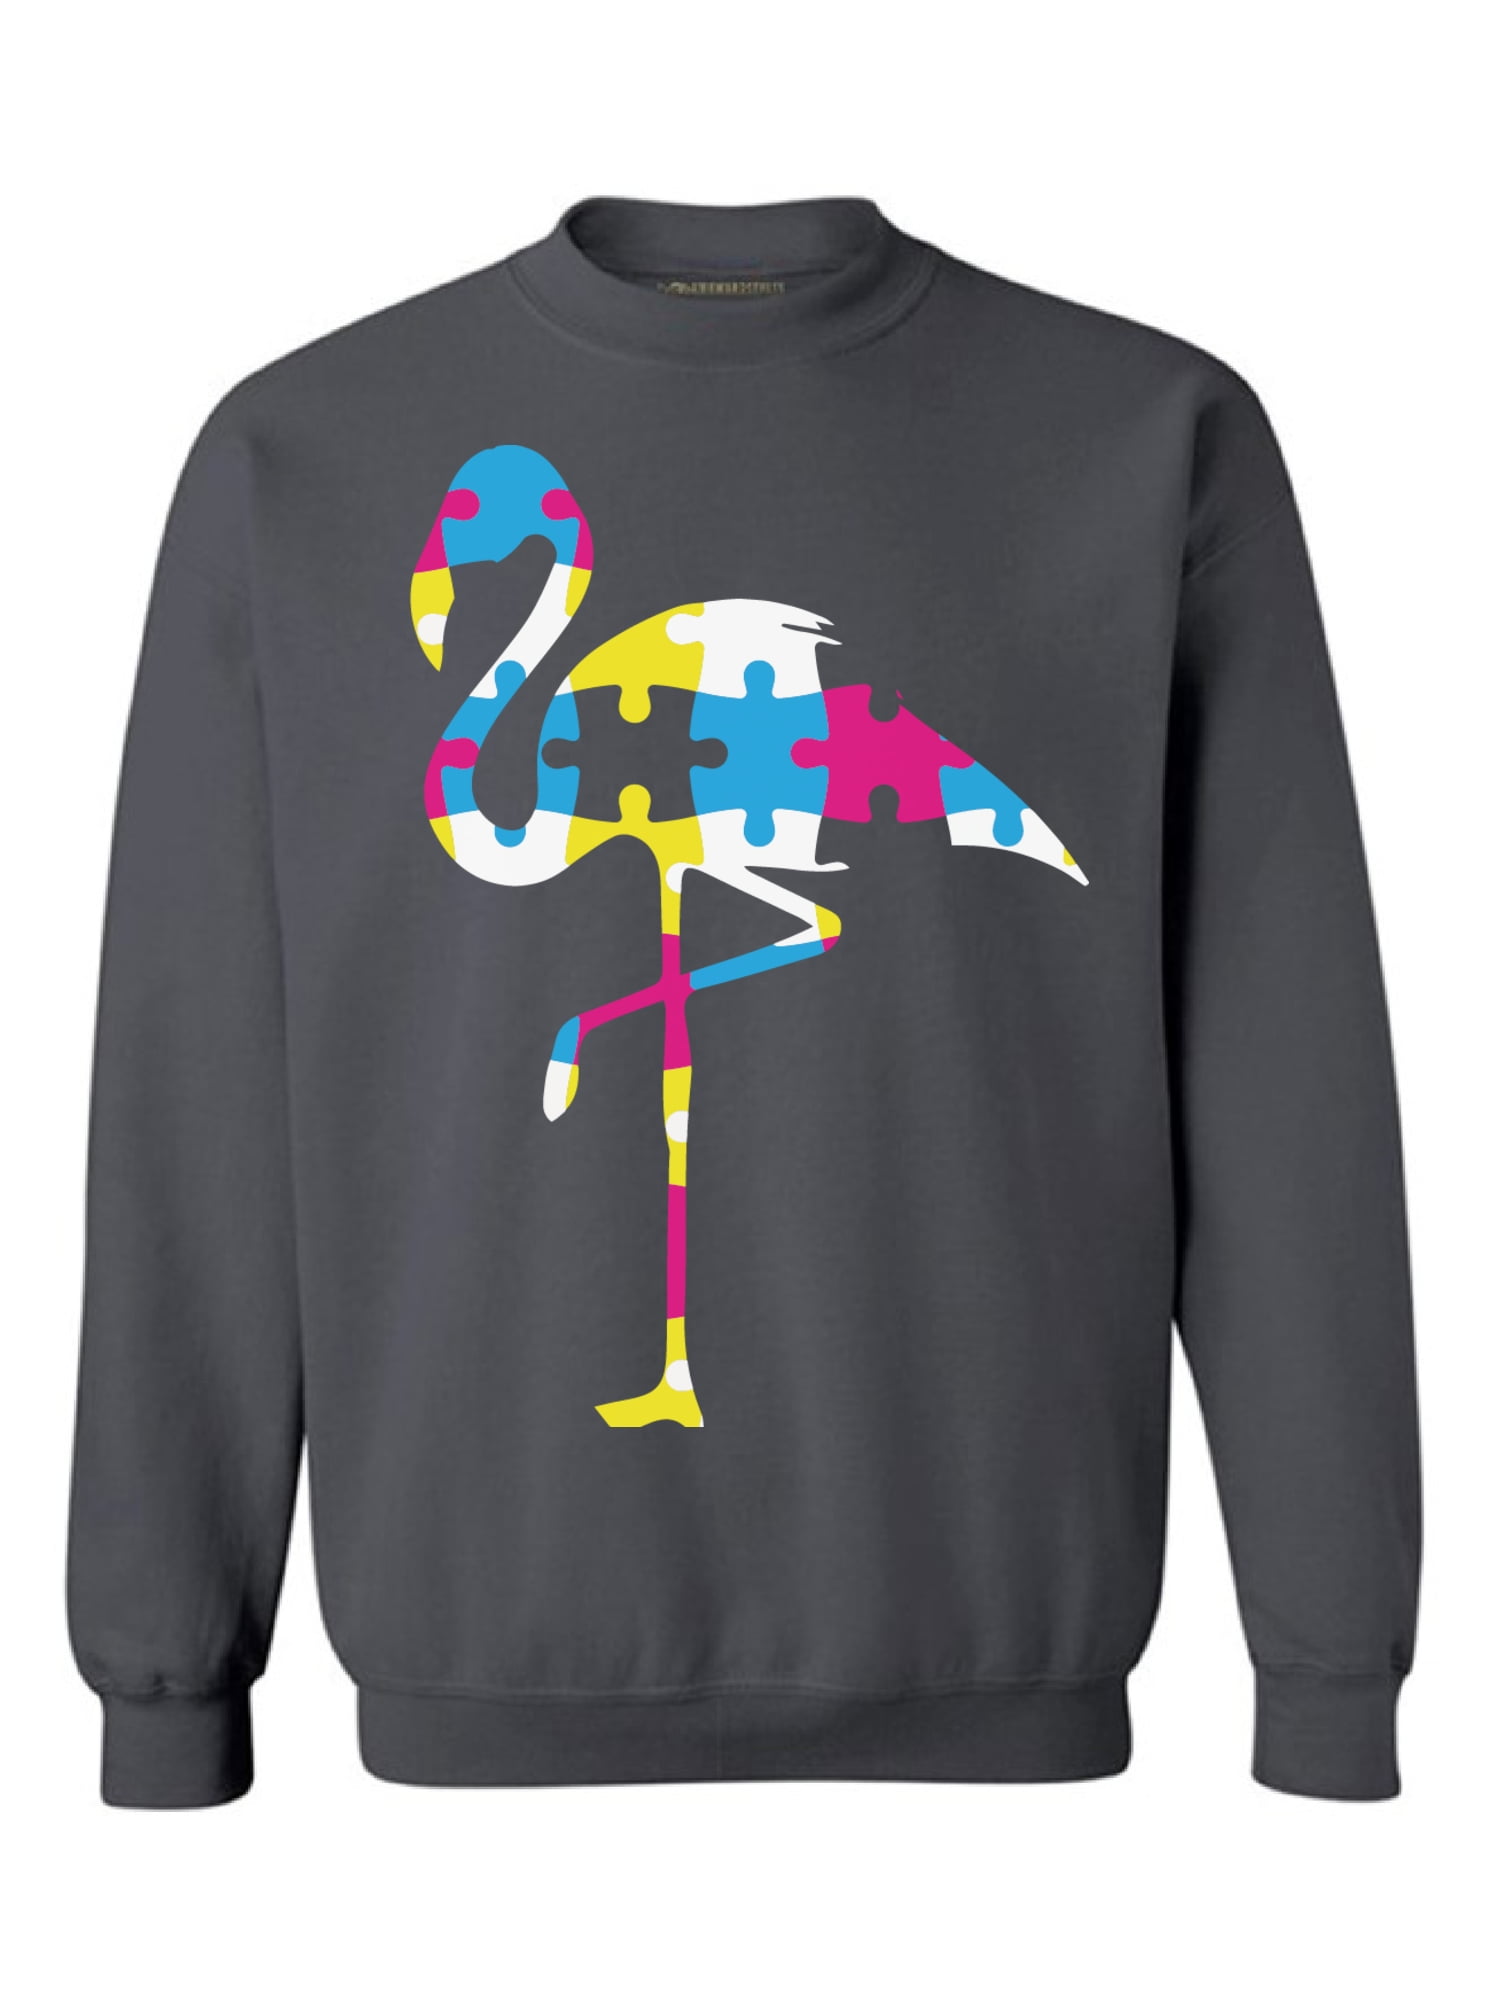 Awkward Styles Autism Flamingo Puzzle Sweatshirt Autism Flamingo ...